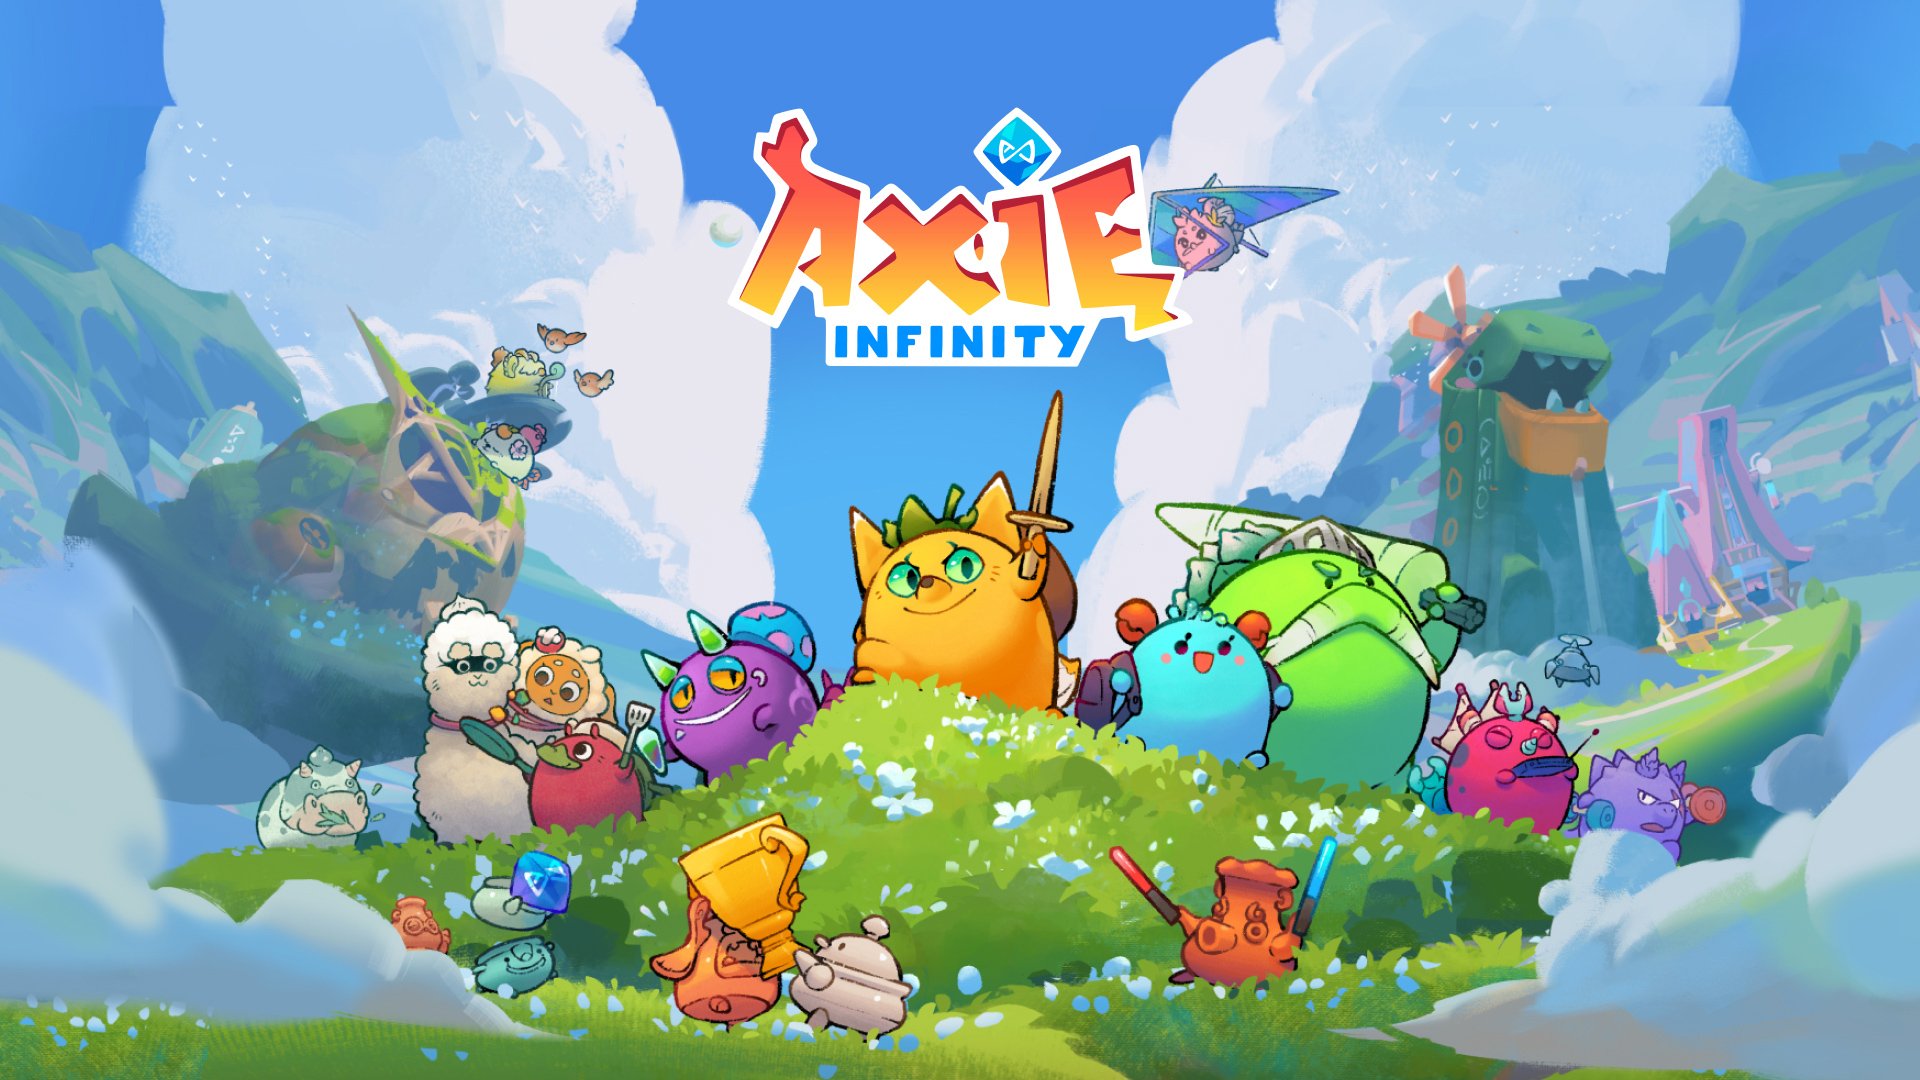 Le succès de 4 milliards de dollars d'Axie Infinity : un témoignage de la révolution du jeu pour gagner